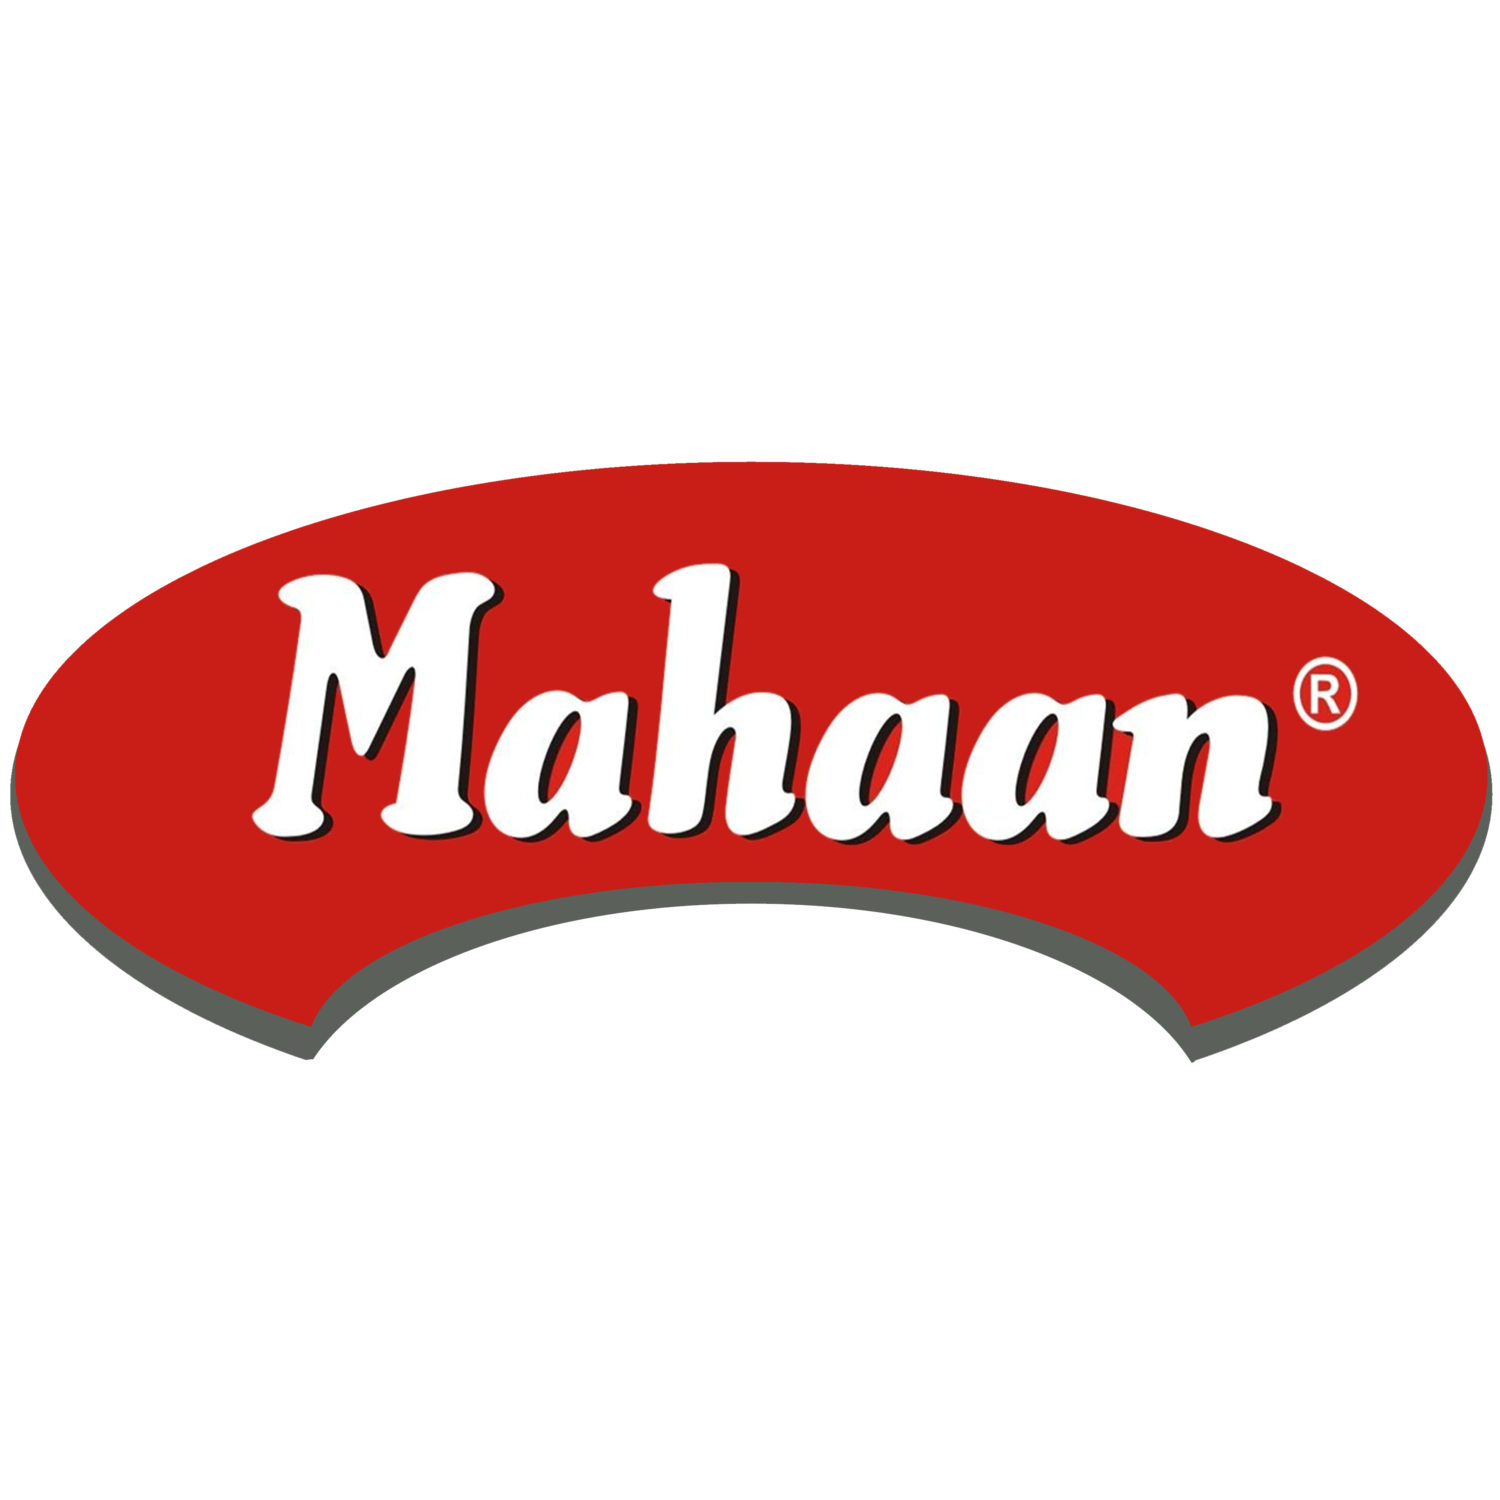 Mahaan Milk Foods